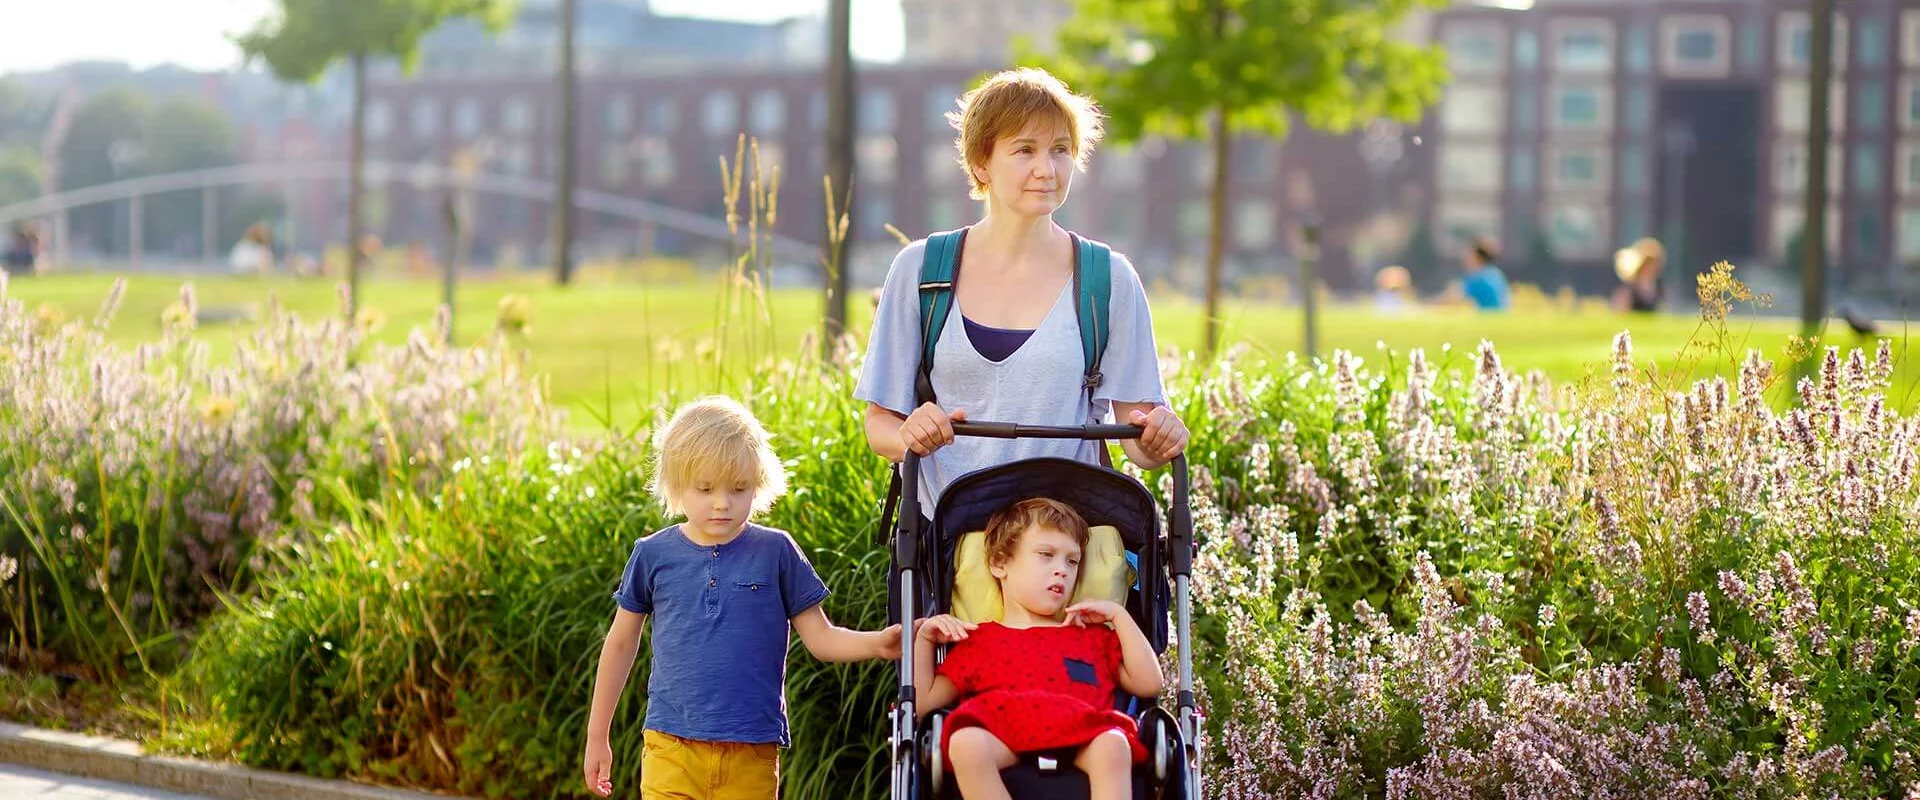 Eine Mutter geht mit ihren zwei Kindern spazieren. Das Mädchen sitzt im Kinderwagen, der Junge hält sich am Kinderwagen fest und läuft neben den beiden. Im Hintergrund sind Blumen und Bäume.